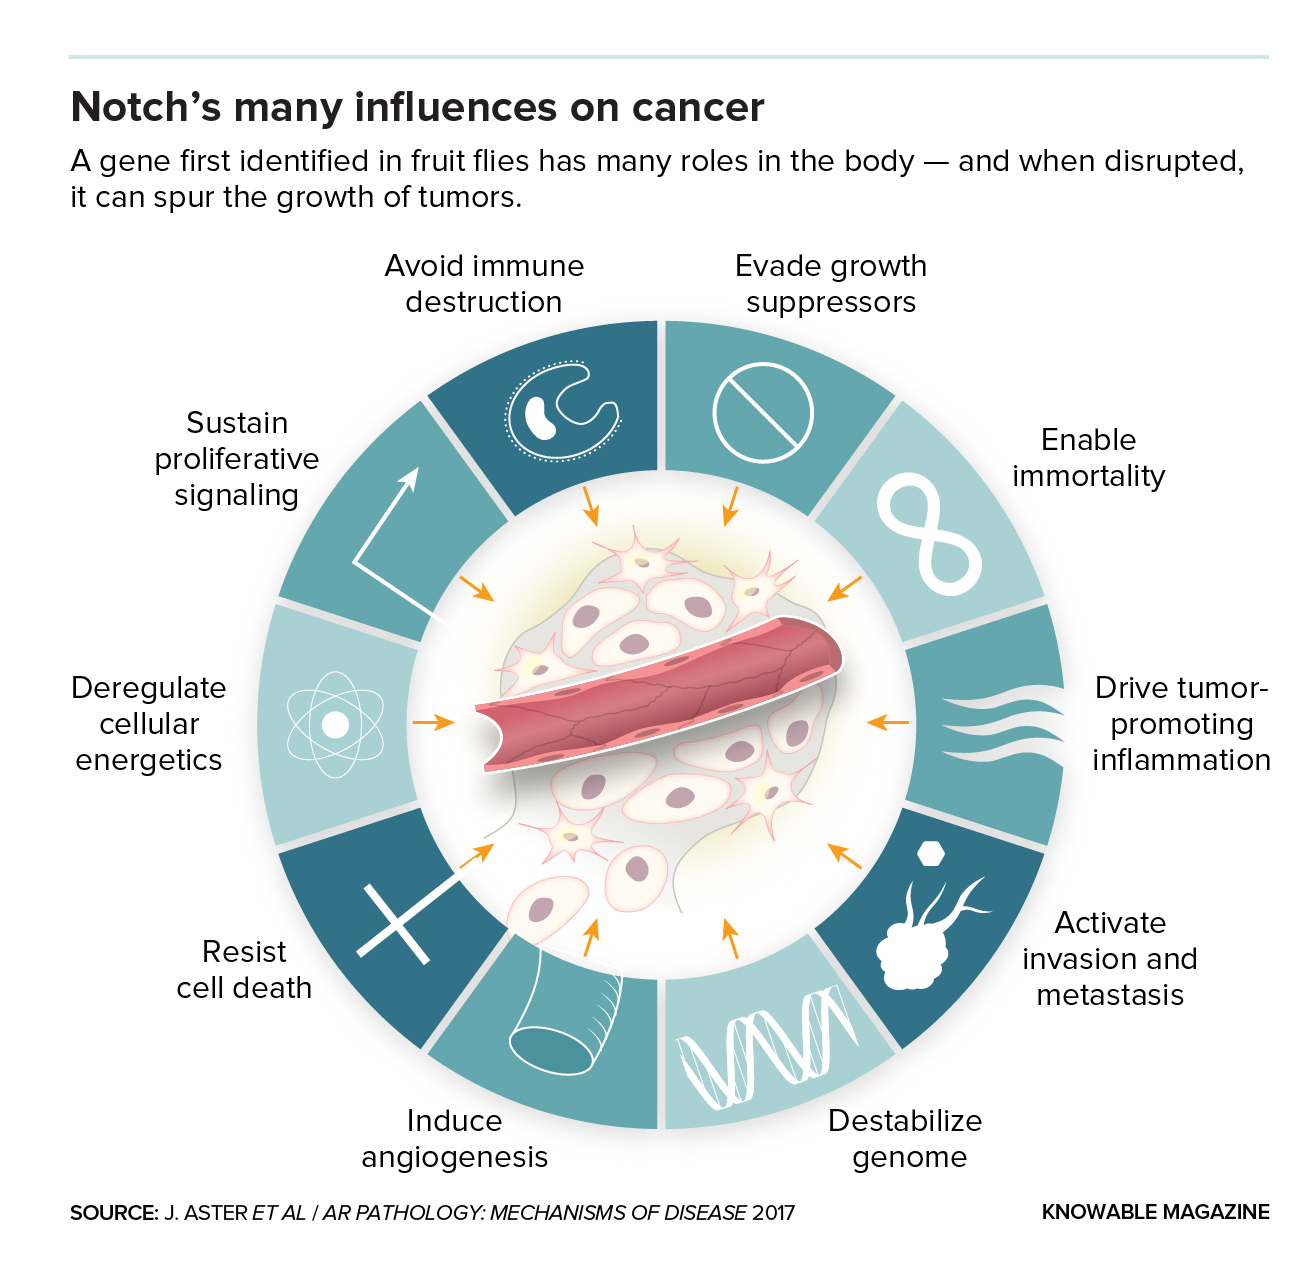 Notch's many influences on cancer - illustration